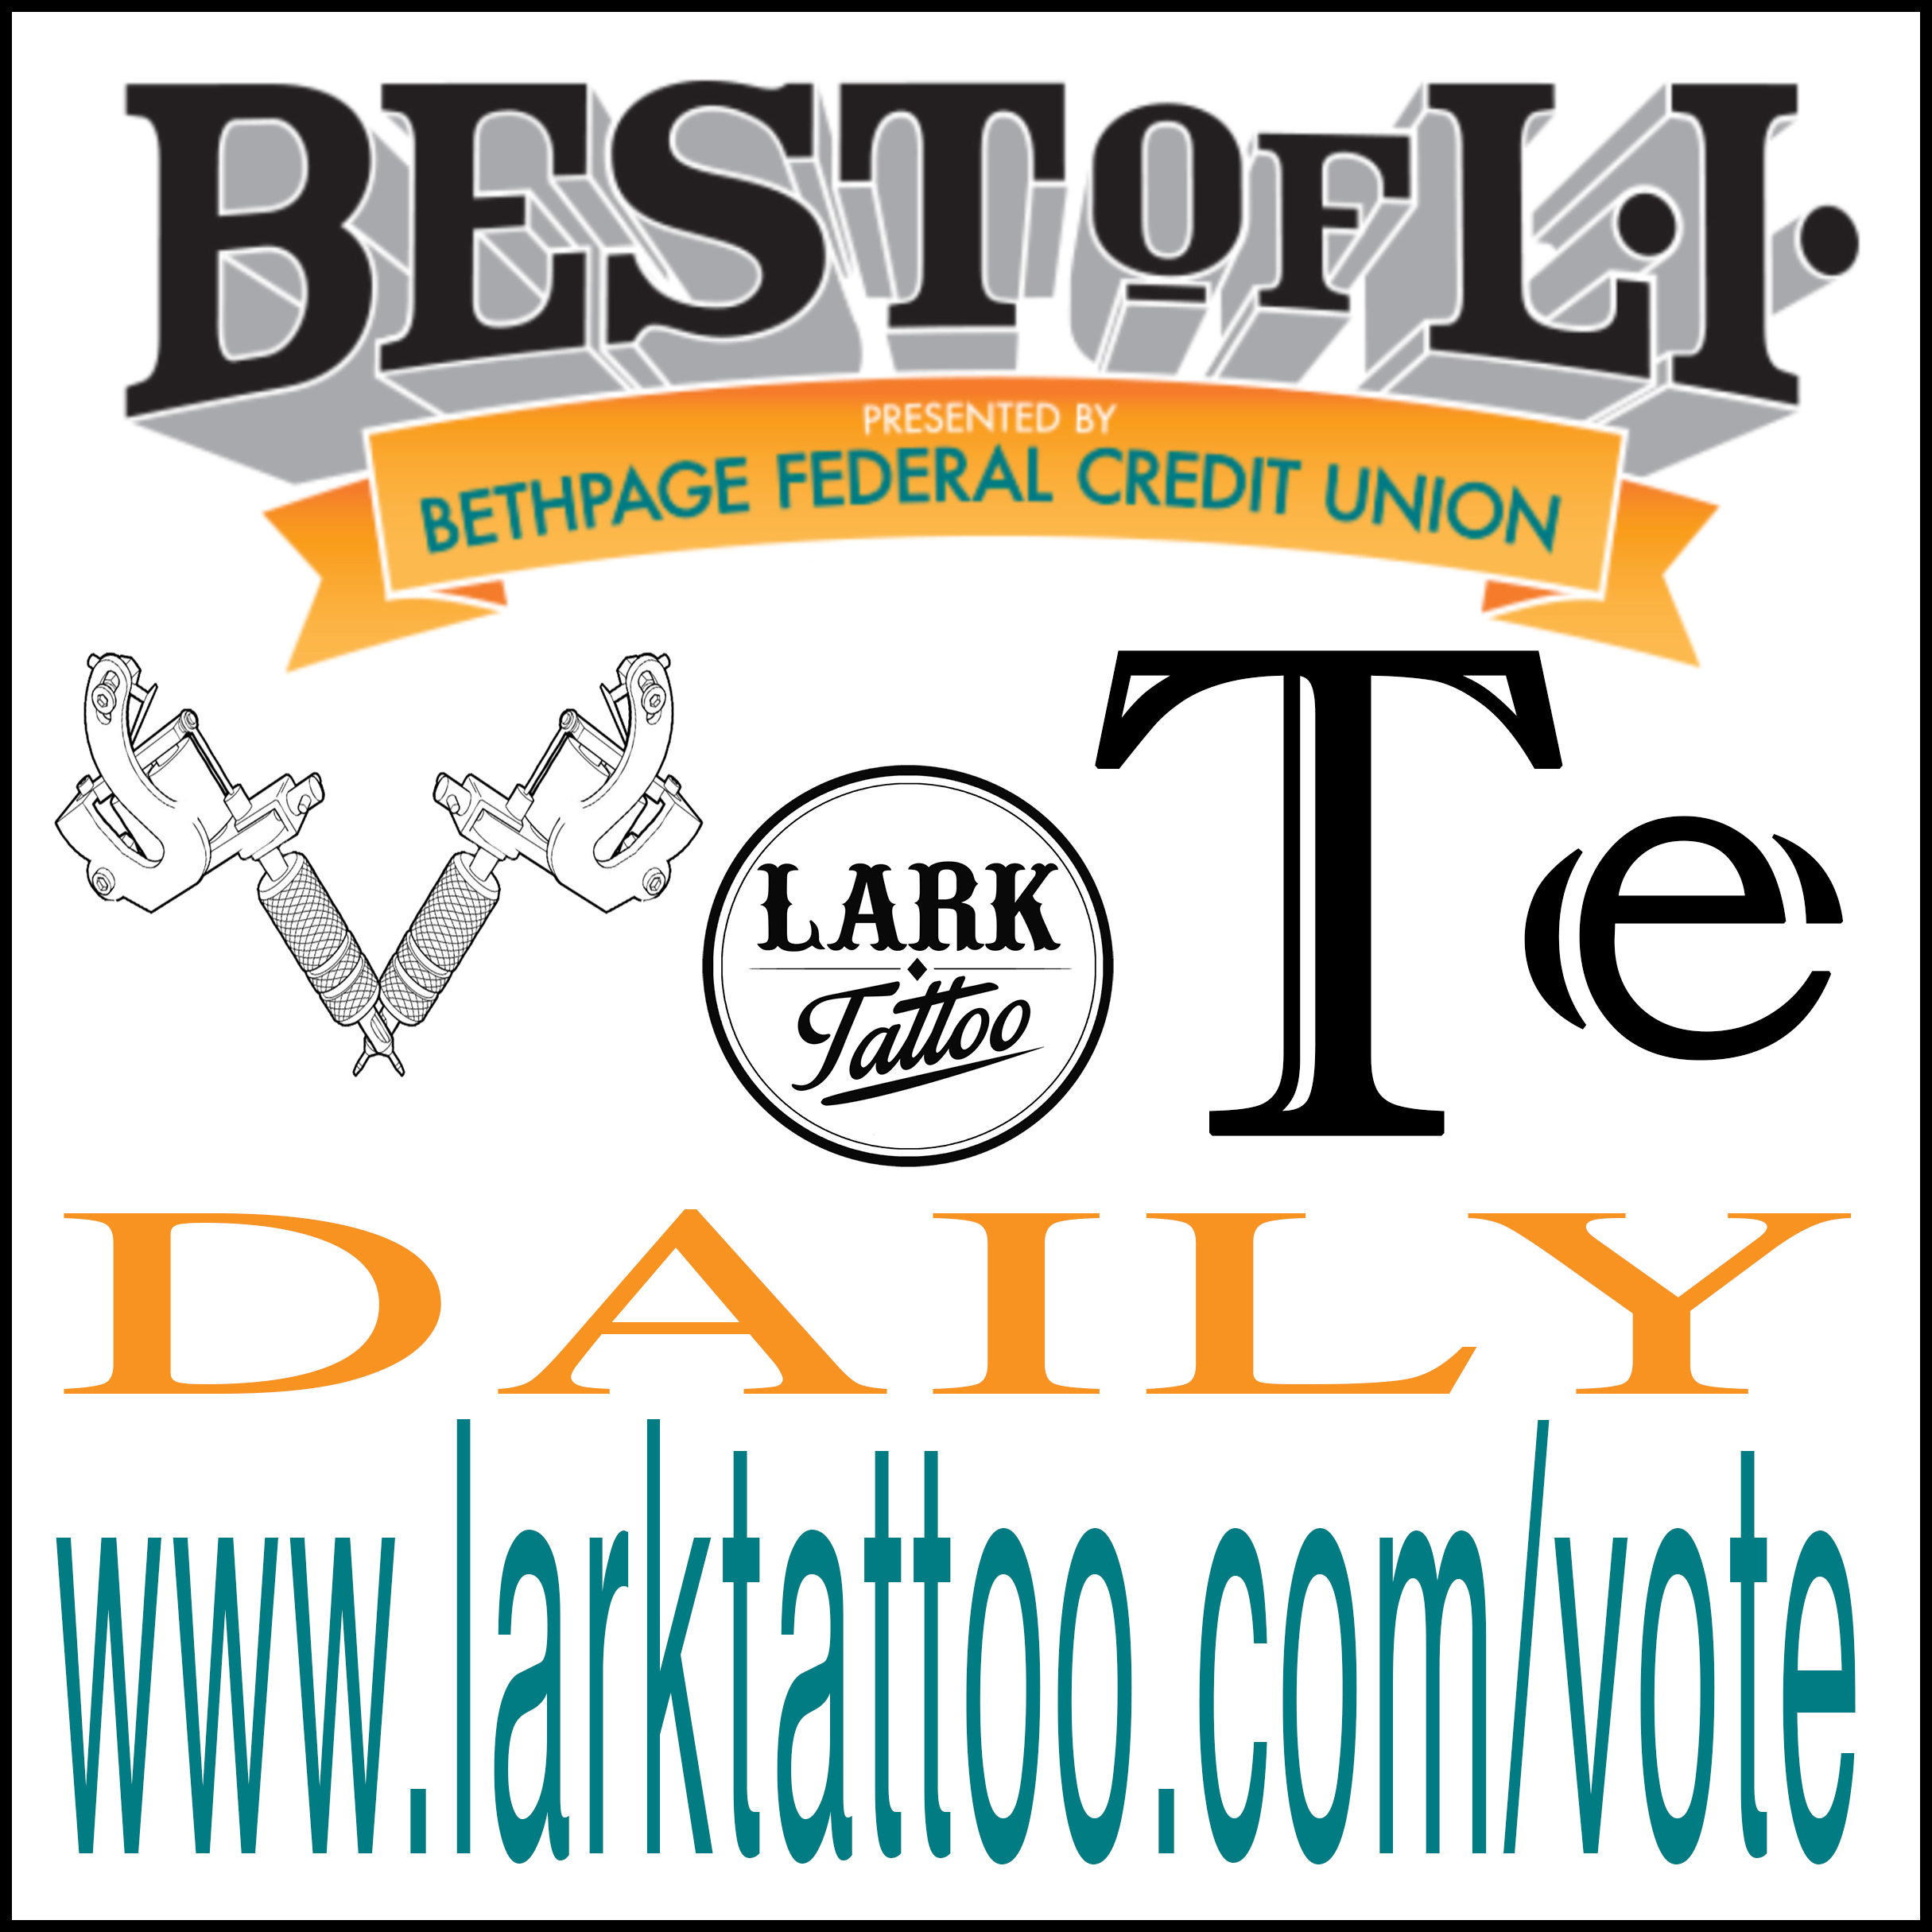 #LarkTattoo #WeNeedYourHelp #Vote #Voting #VoteForUs #BestOfLongIsland #BestOfLI #BoLI #Tattoo #Tattoos #Tattooist #Tattooed #TattooParlor #BestTattooParlor #LongIslandBestTattooParlor #LongIsland #NY #NewYork #Westbury #TattooShop #BestTattooShop